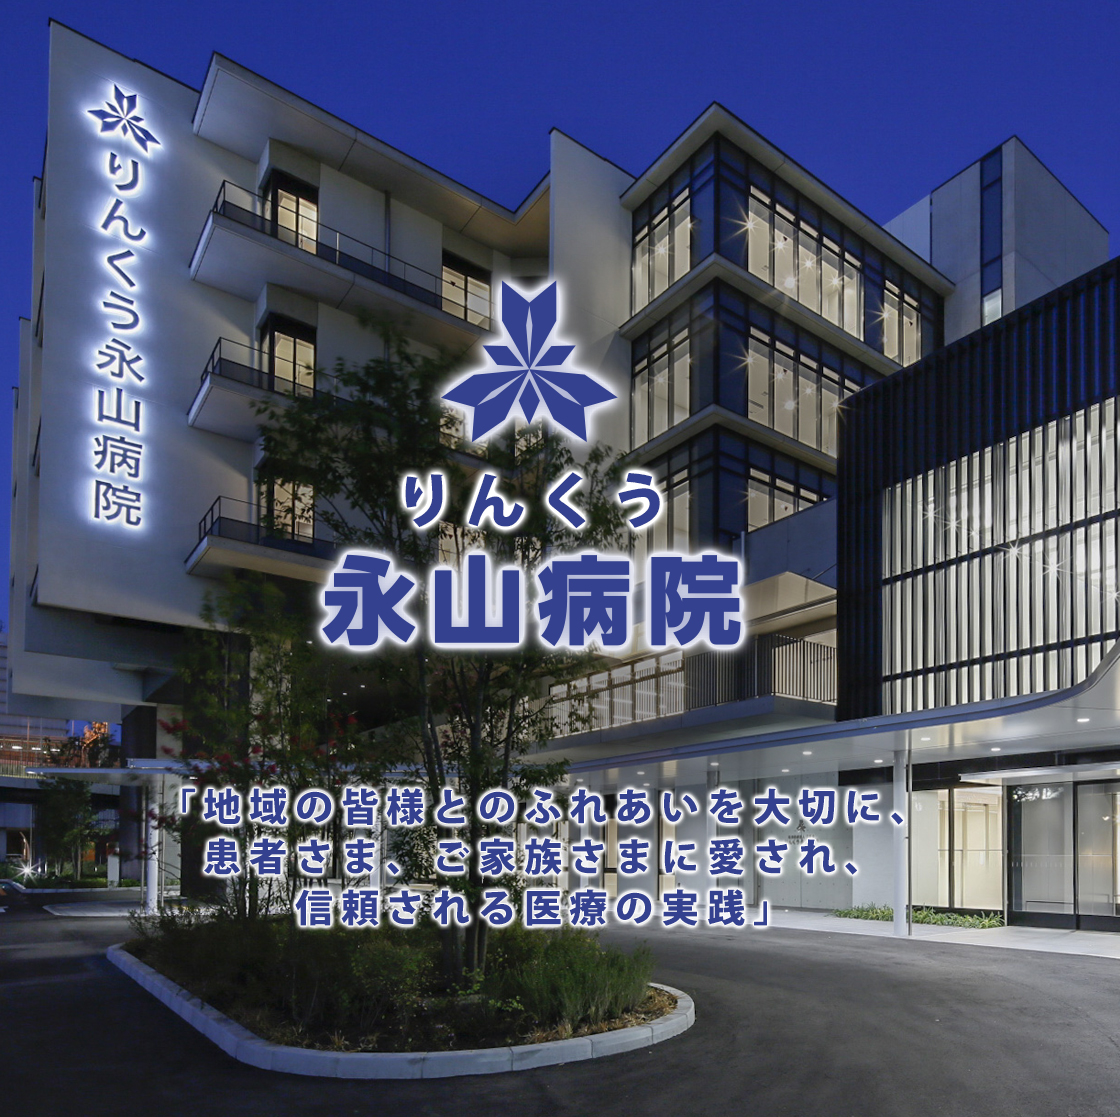 熊取の永山病院は地域医療のプロフェッショナルとして日々の医療に当たっております。